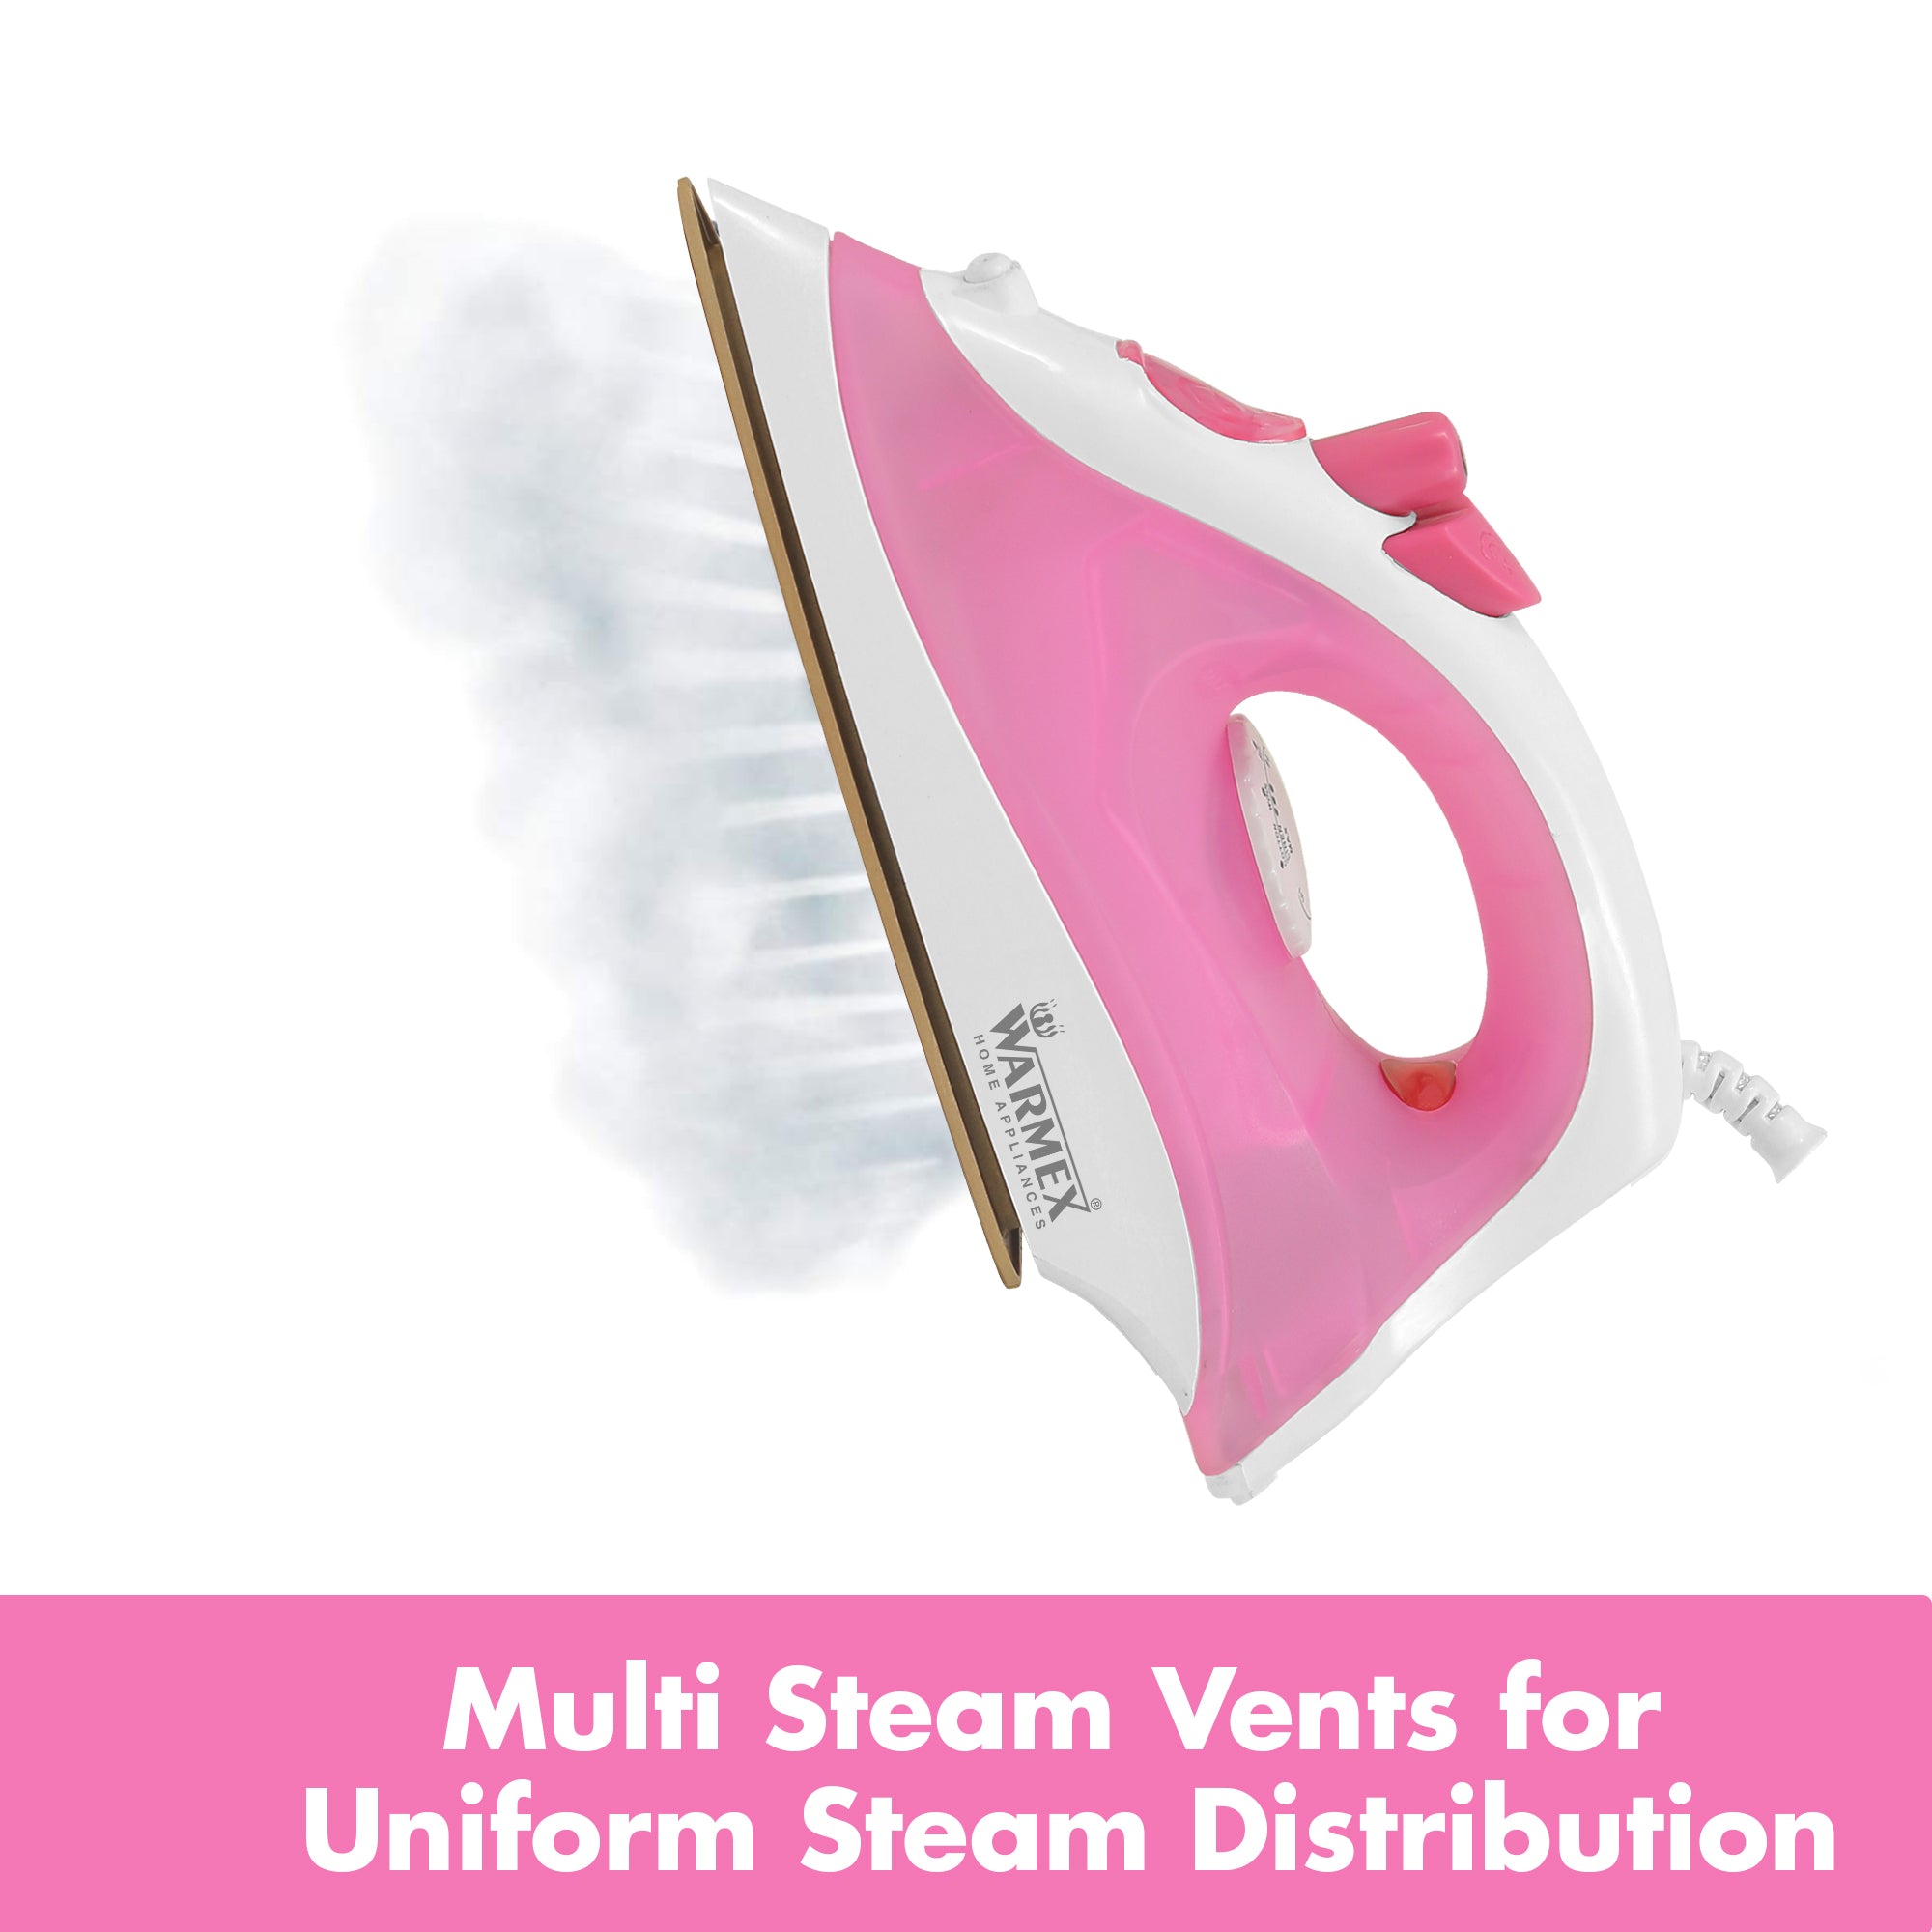 Warmex Steam Glide (Pink) warmexhomeappliances